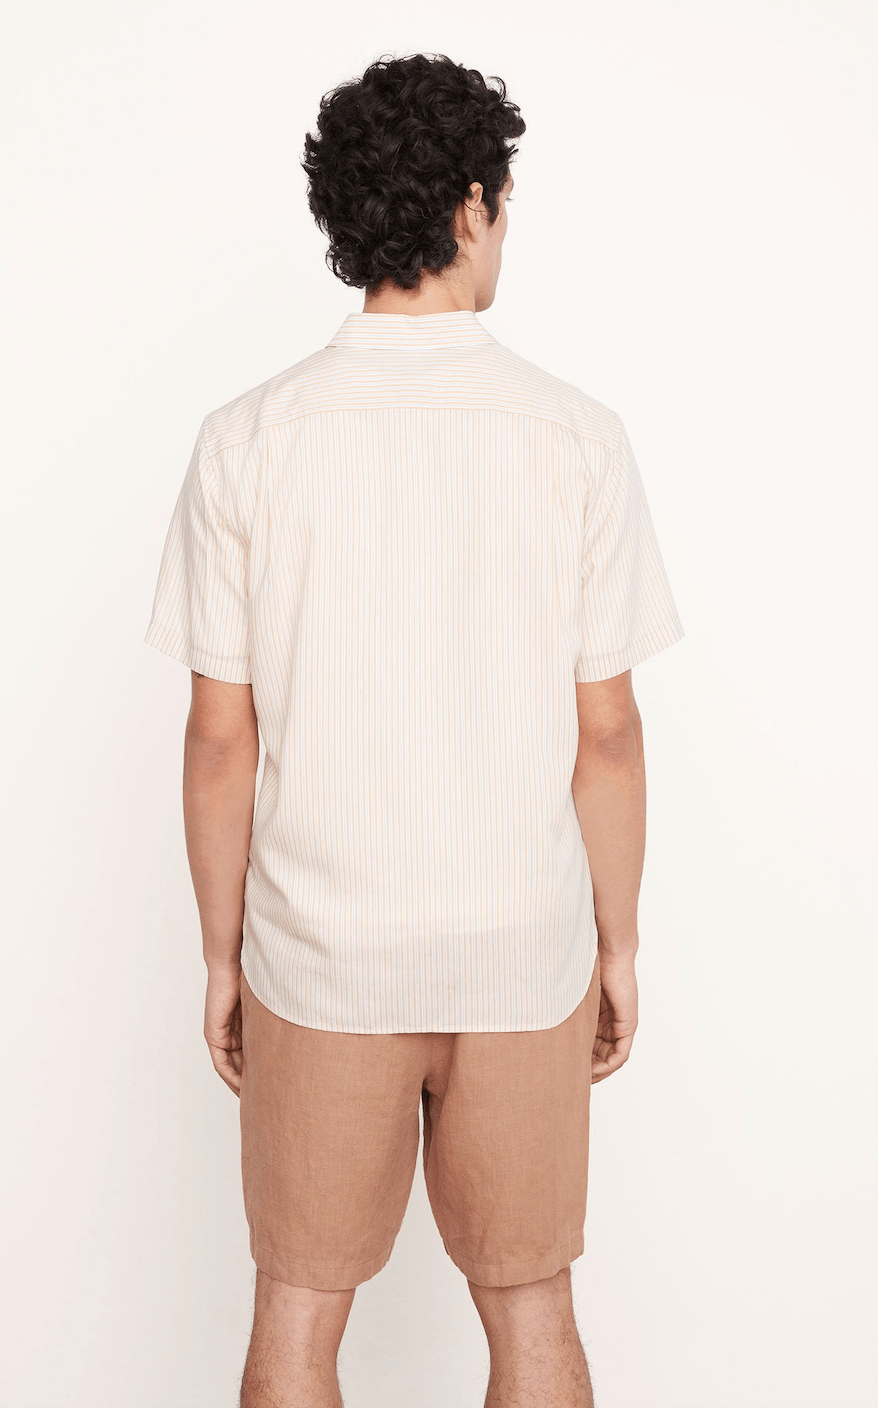 Vince Peninsula Stripe Short Sleeve Shirt in Warm Oat - Estilo Boutique